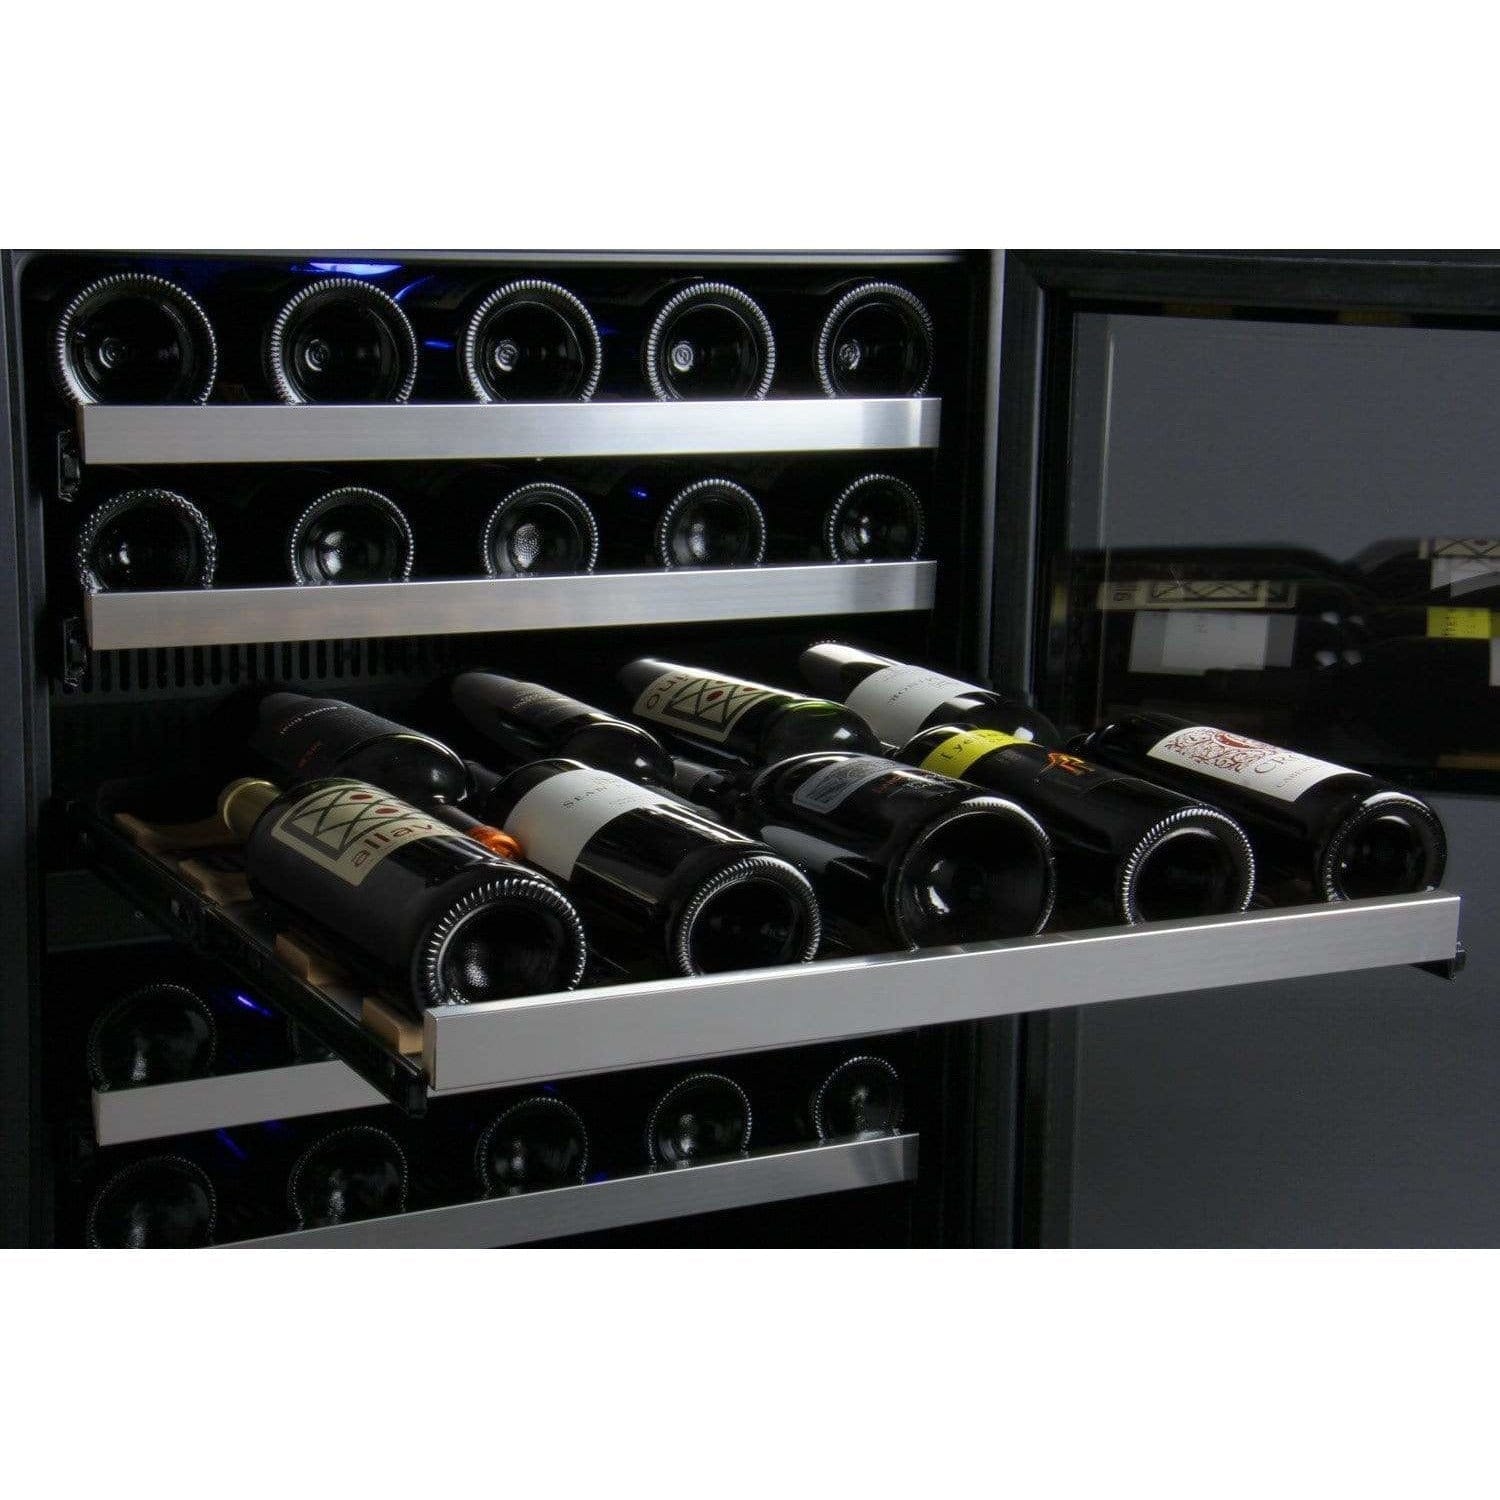 Allavino FlexCount 112 Bottle Three-Zone Wine Fridge 3Z-VSWR5656-SST Wine Coolers 3Z-VSWR5656-SST Luxury Appliances Direct